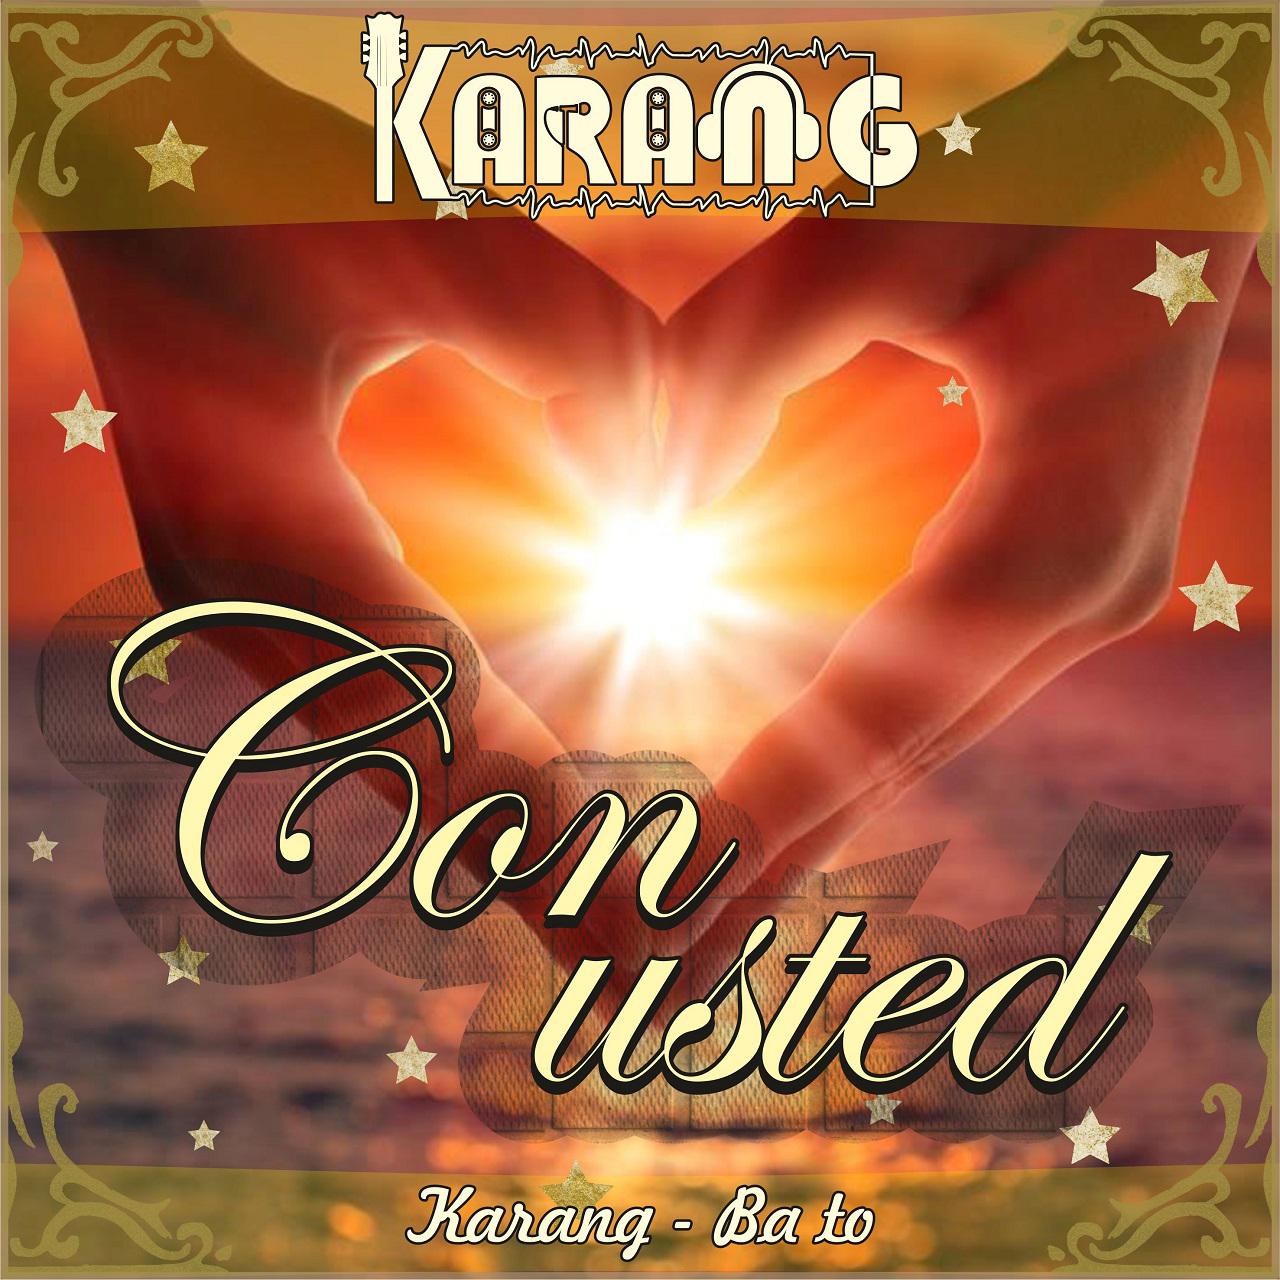  دانلود آهنگ جدید کارنگ - با تو | Download New Music By Karang - Ba To